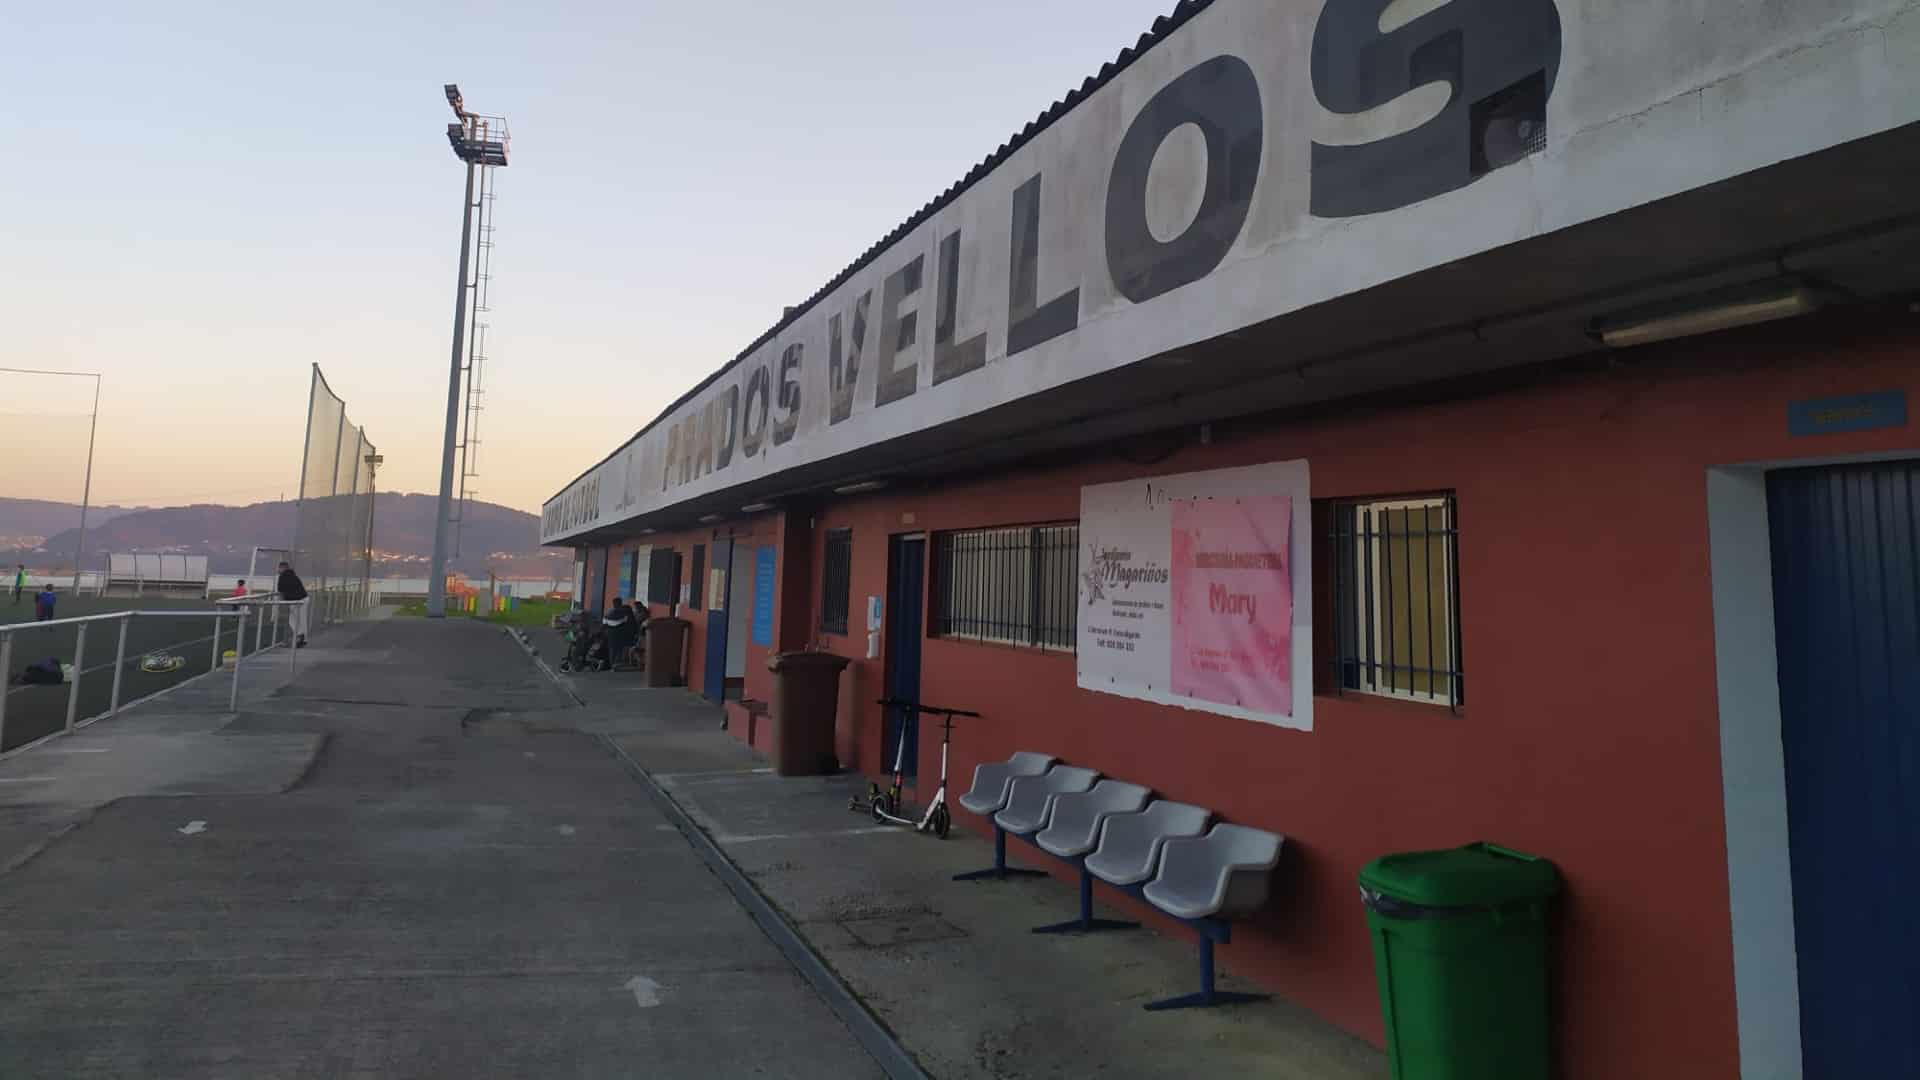 El campo de fútbol de Prados Vellos, en Ares | CONCELLO DE ARES